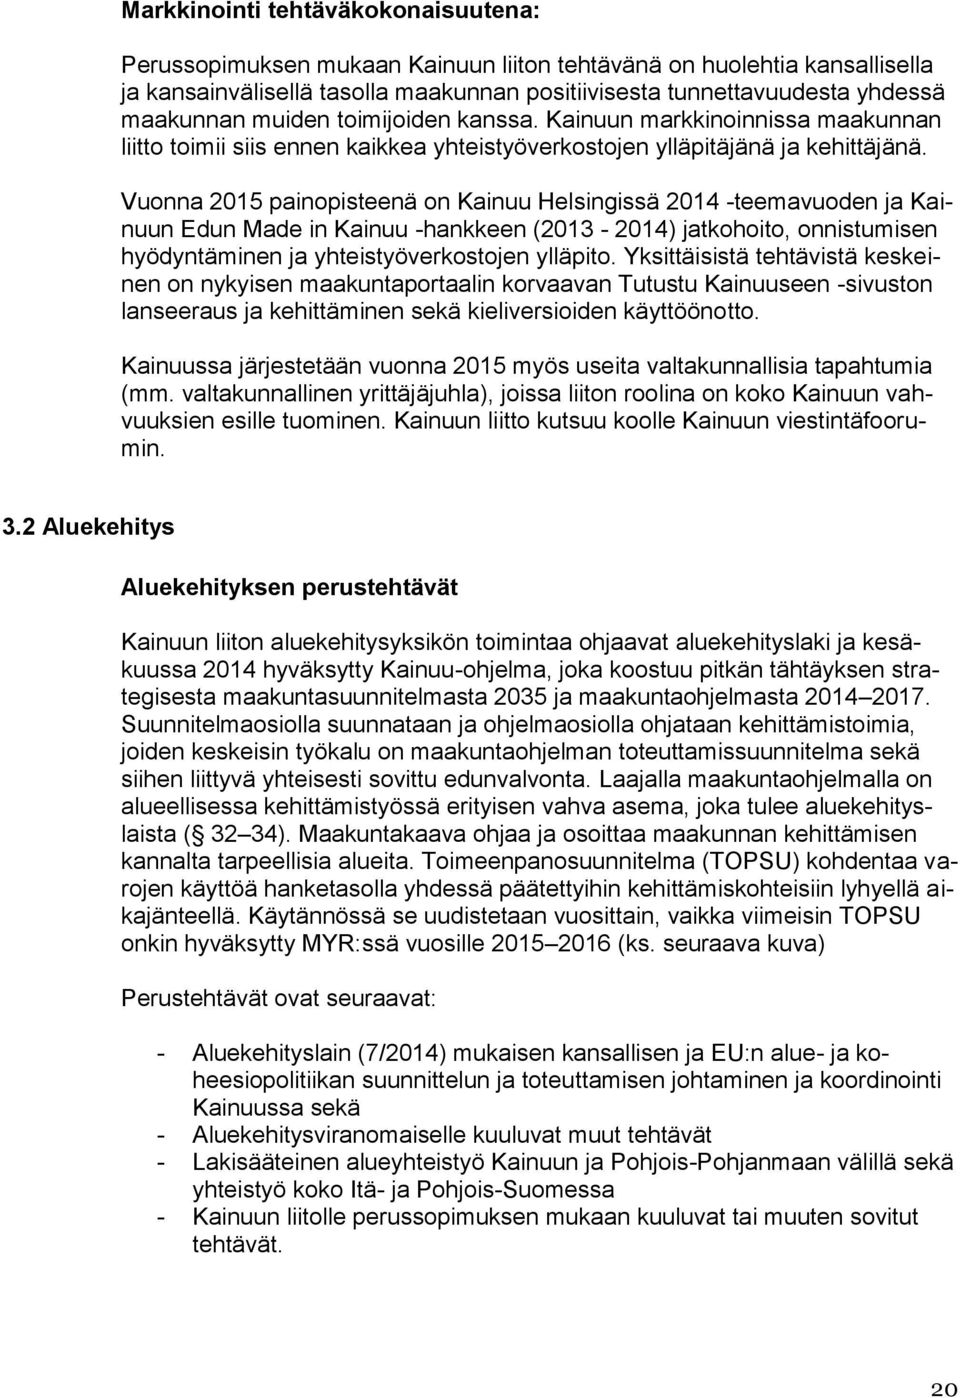 Vuonna 2015 painopisteenä on Kainuu Helsingissä 2014 -teemavuoden ja Kainuun Edun Made in Kainuu -hankkeen (2013-2014) jatkohoito, onnistumisen hyödyntäminen ja yhteistyöverkostojen ylläpito.